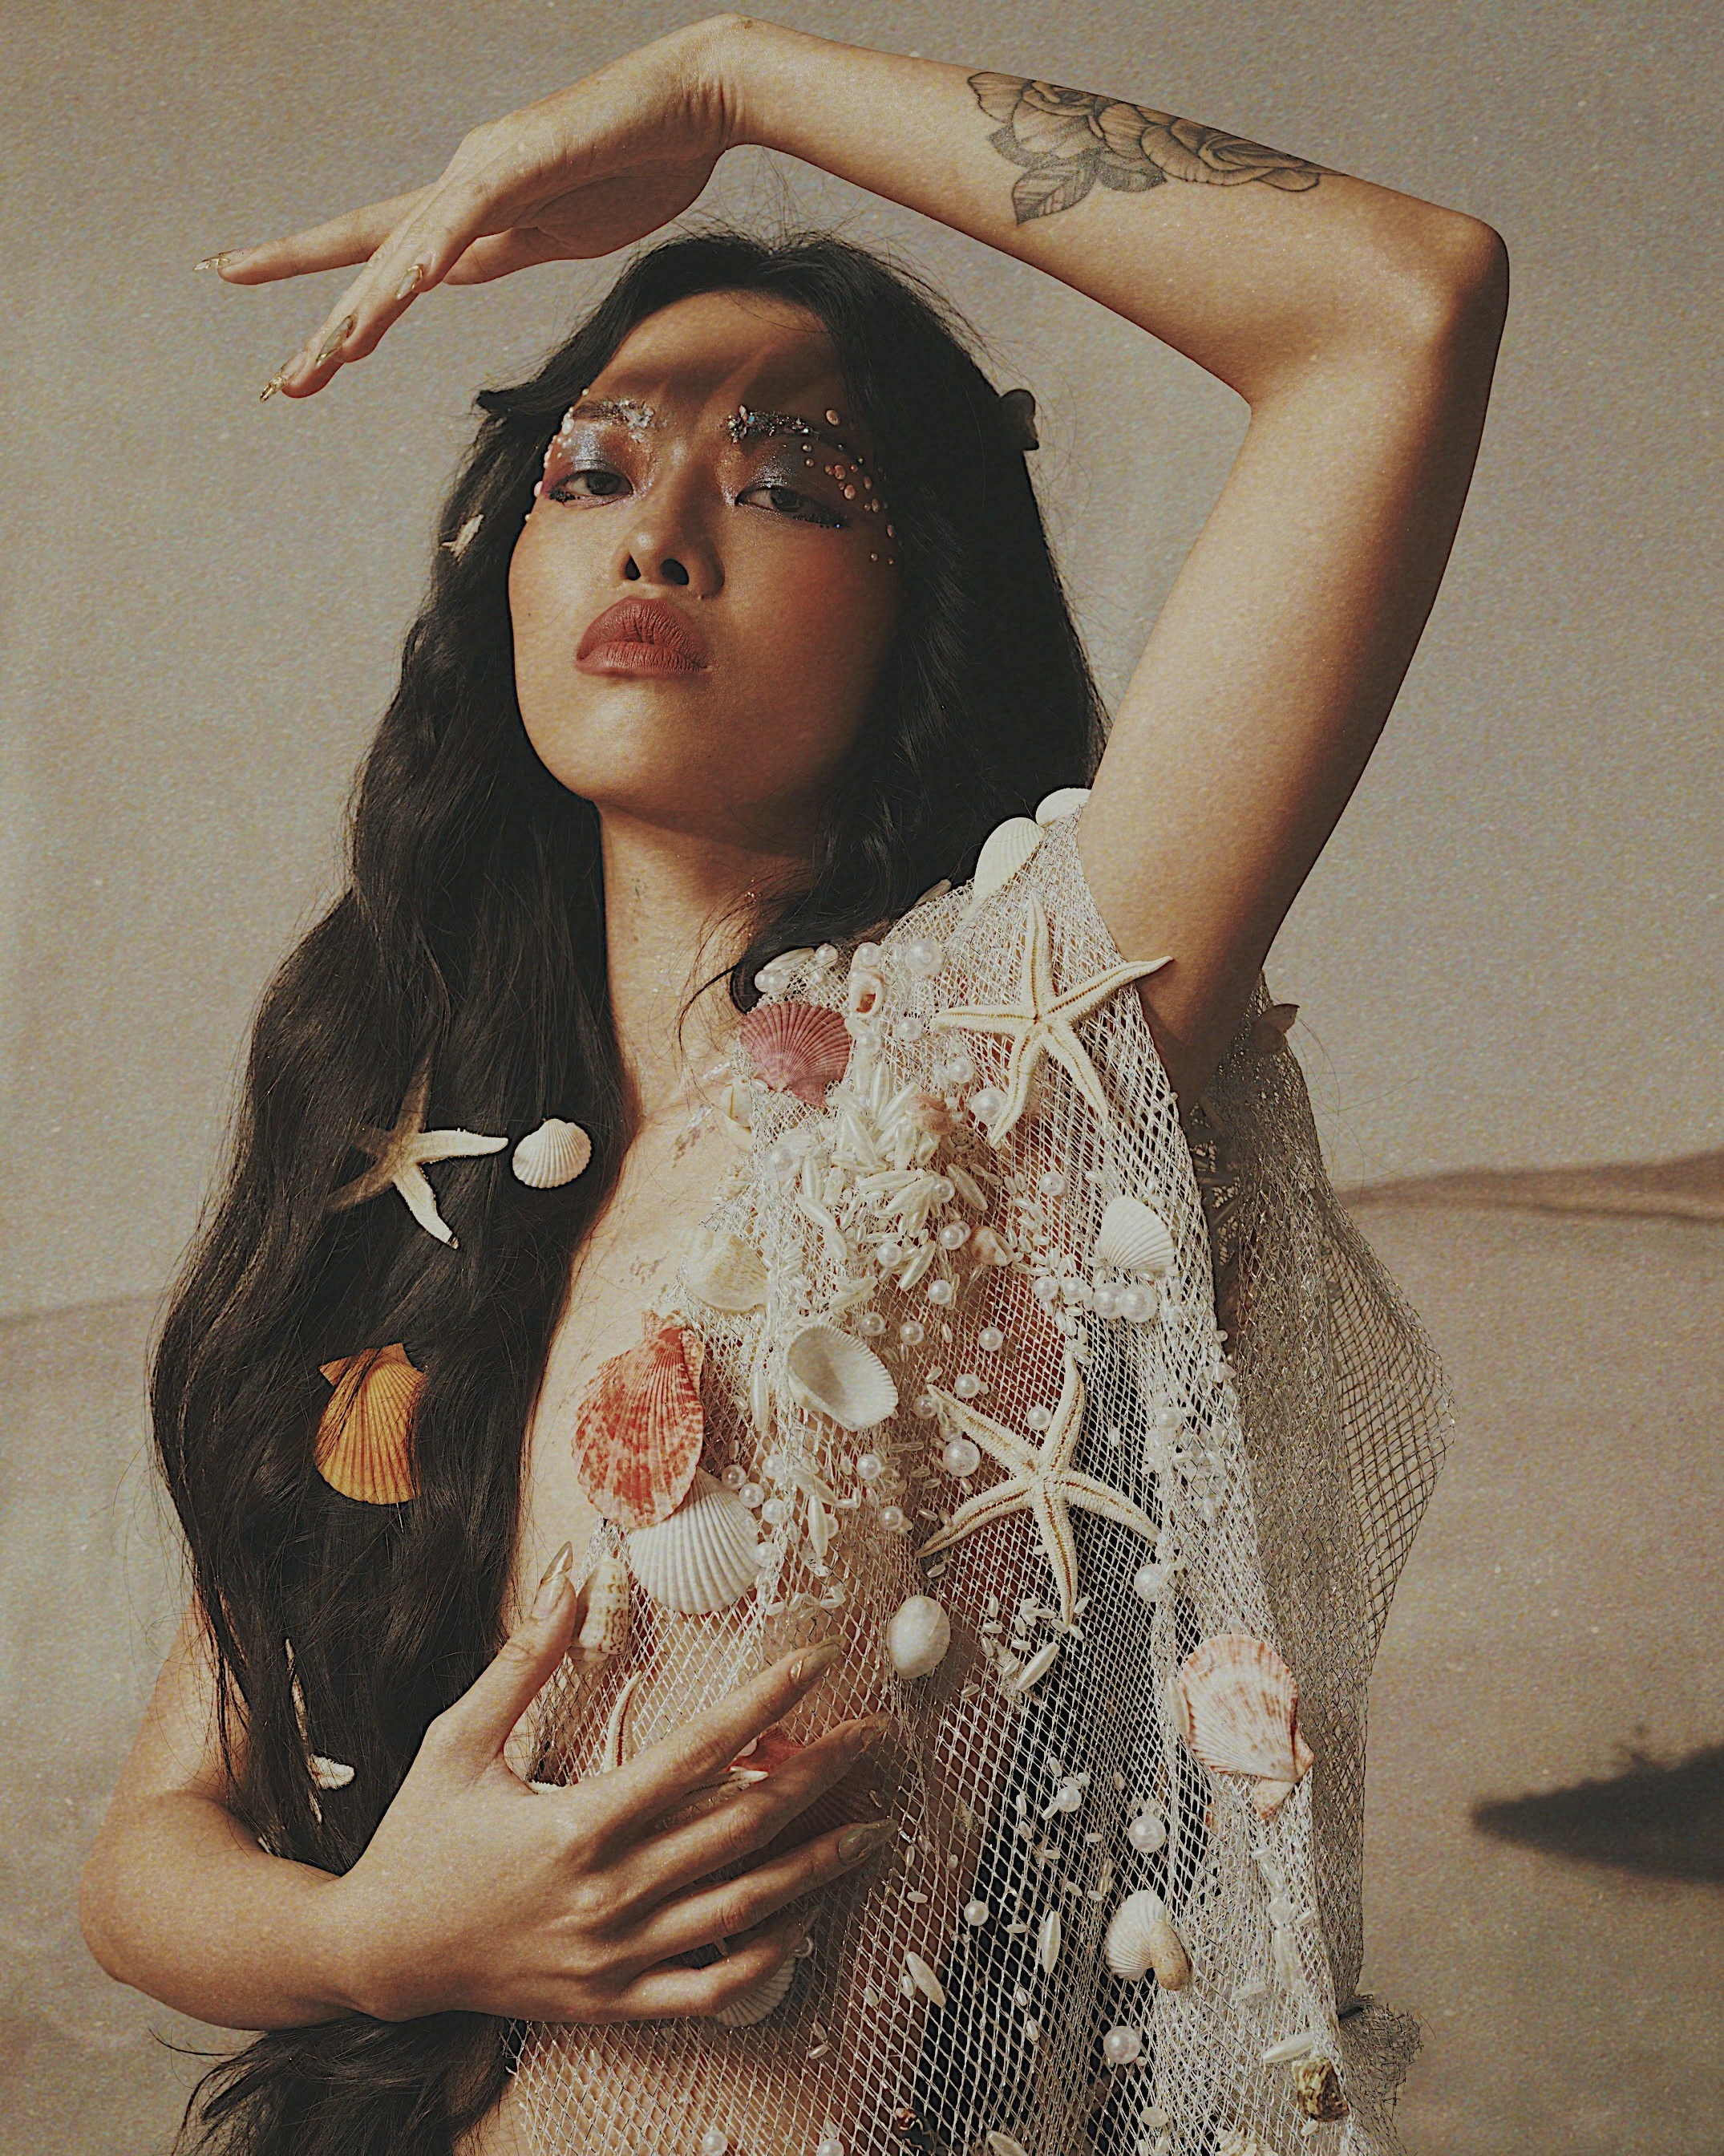 Nhan sắc Wiwi Nguyễn, người mẫu tham dự \'Supermodel Me\'